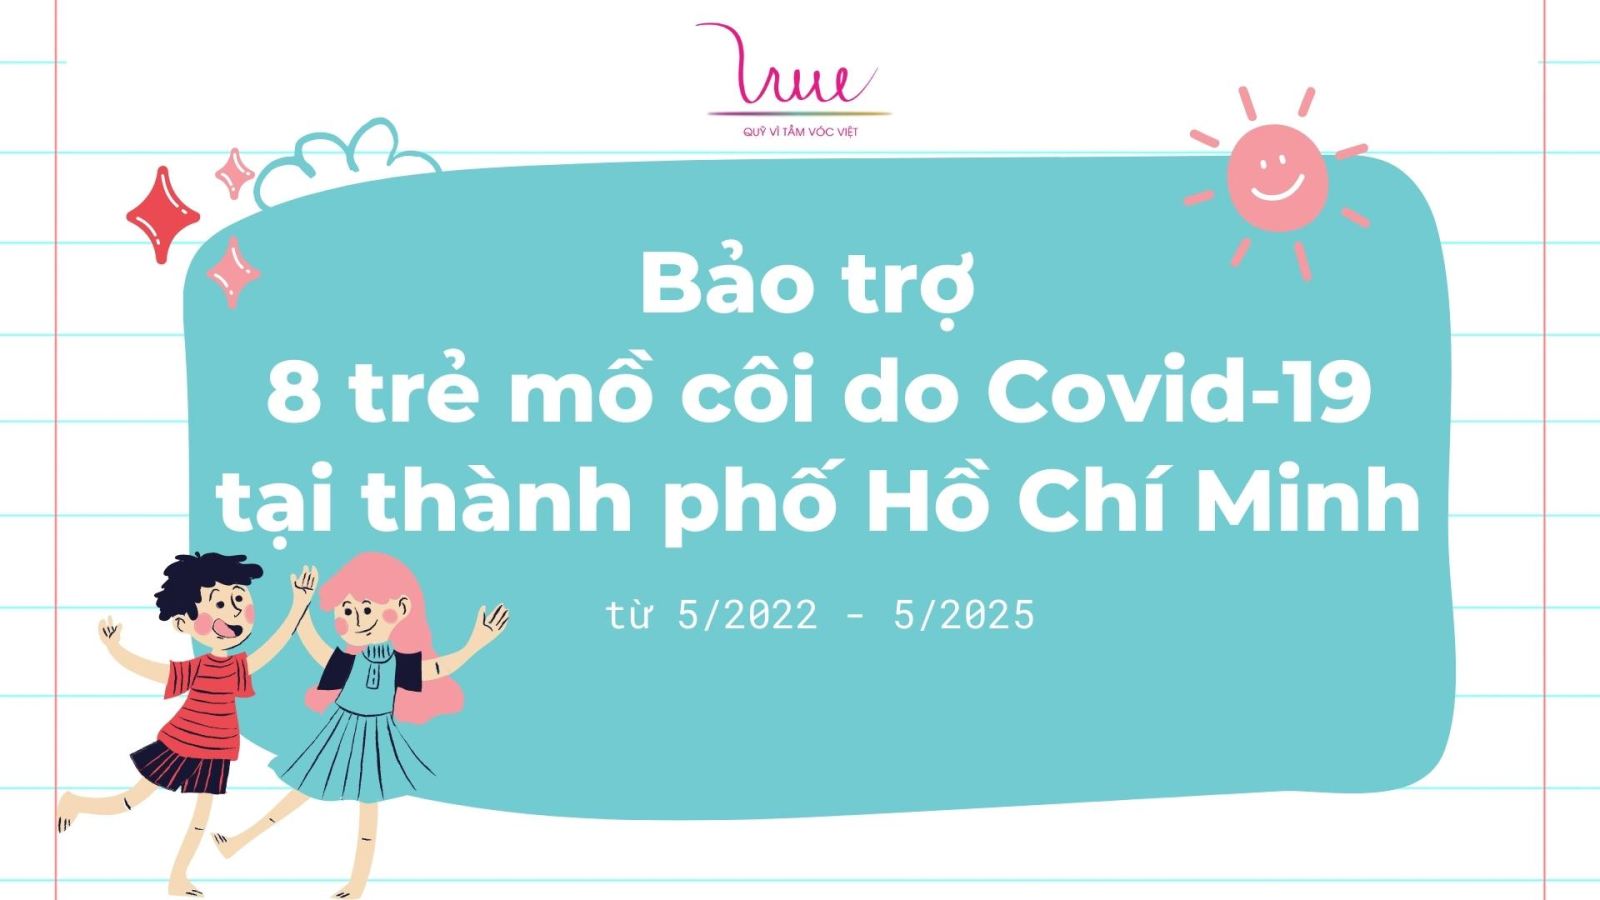 Bảo trợ 8 trẻ mồ côi do COVID-19 tại thành phố Hồ Chí Minh